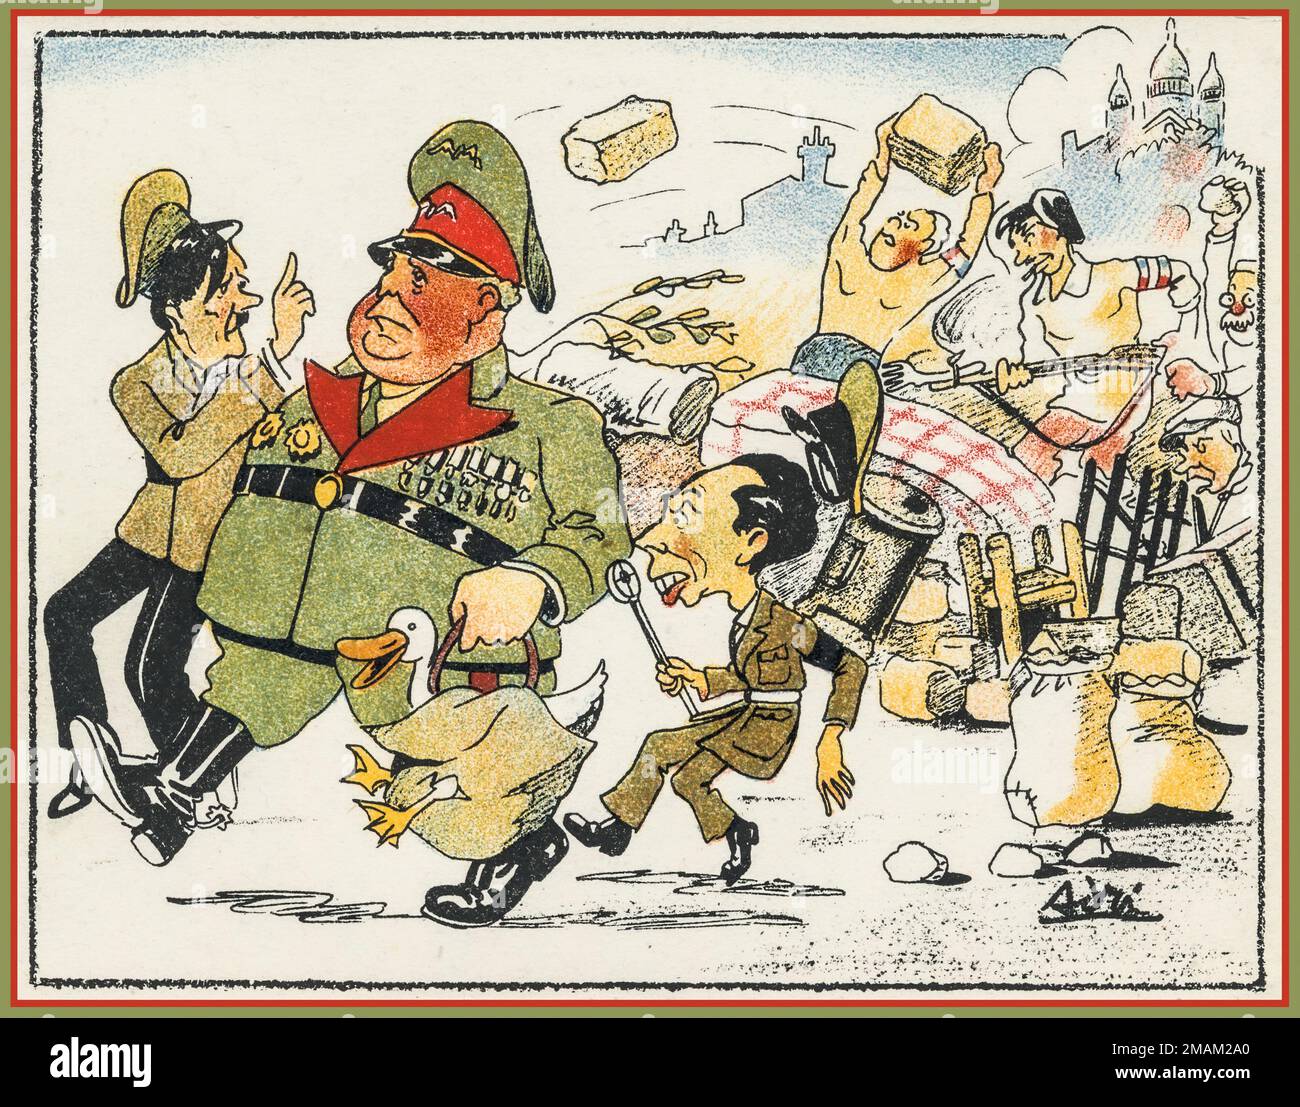 WW2 caricature de dessin animé anti-nazi avec un gros Hermann Goering, avec Adolf Hitler en train de se monstruer et Joseph Goebbels avec son microphone de propagande en France, faisant l'expérience d'une forte résistance à la frontière française de Paris. Deuxième Guerre mondiale Banque D'Images